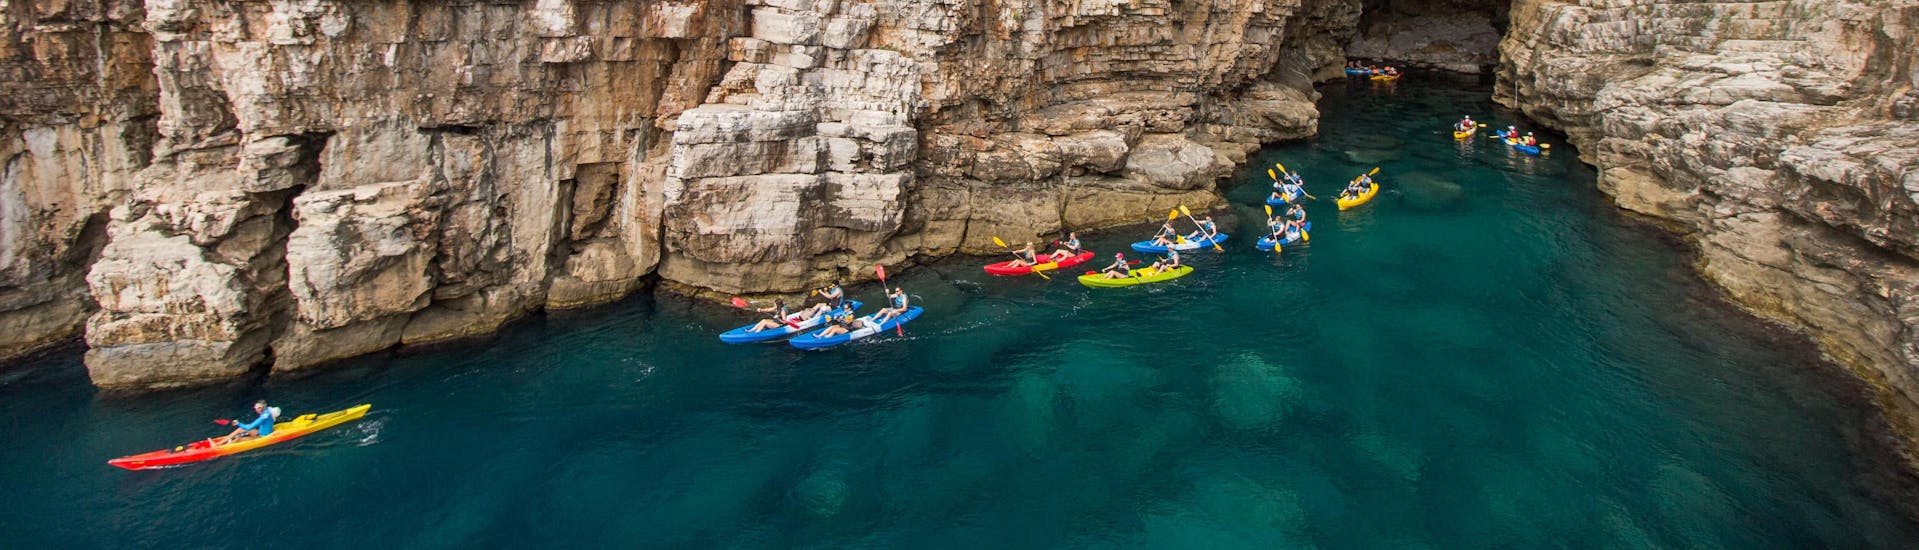 Dos amigos haciendo un descenso en canoa en Dubrovnik, una zona muy popular para hacer piragüismo.